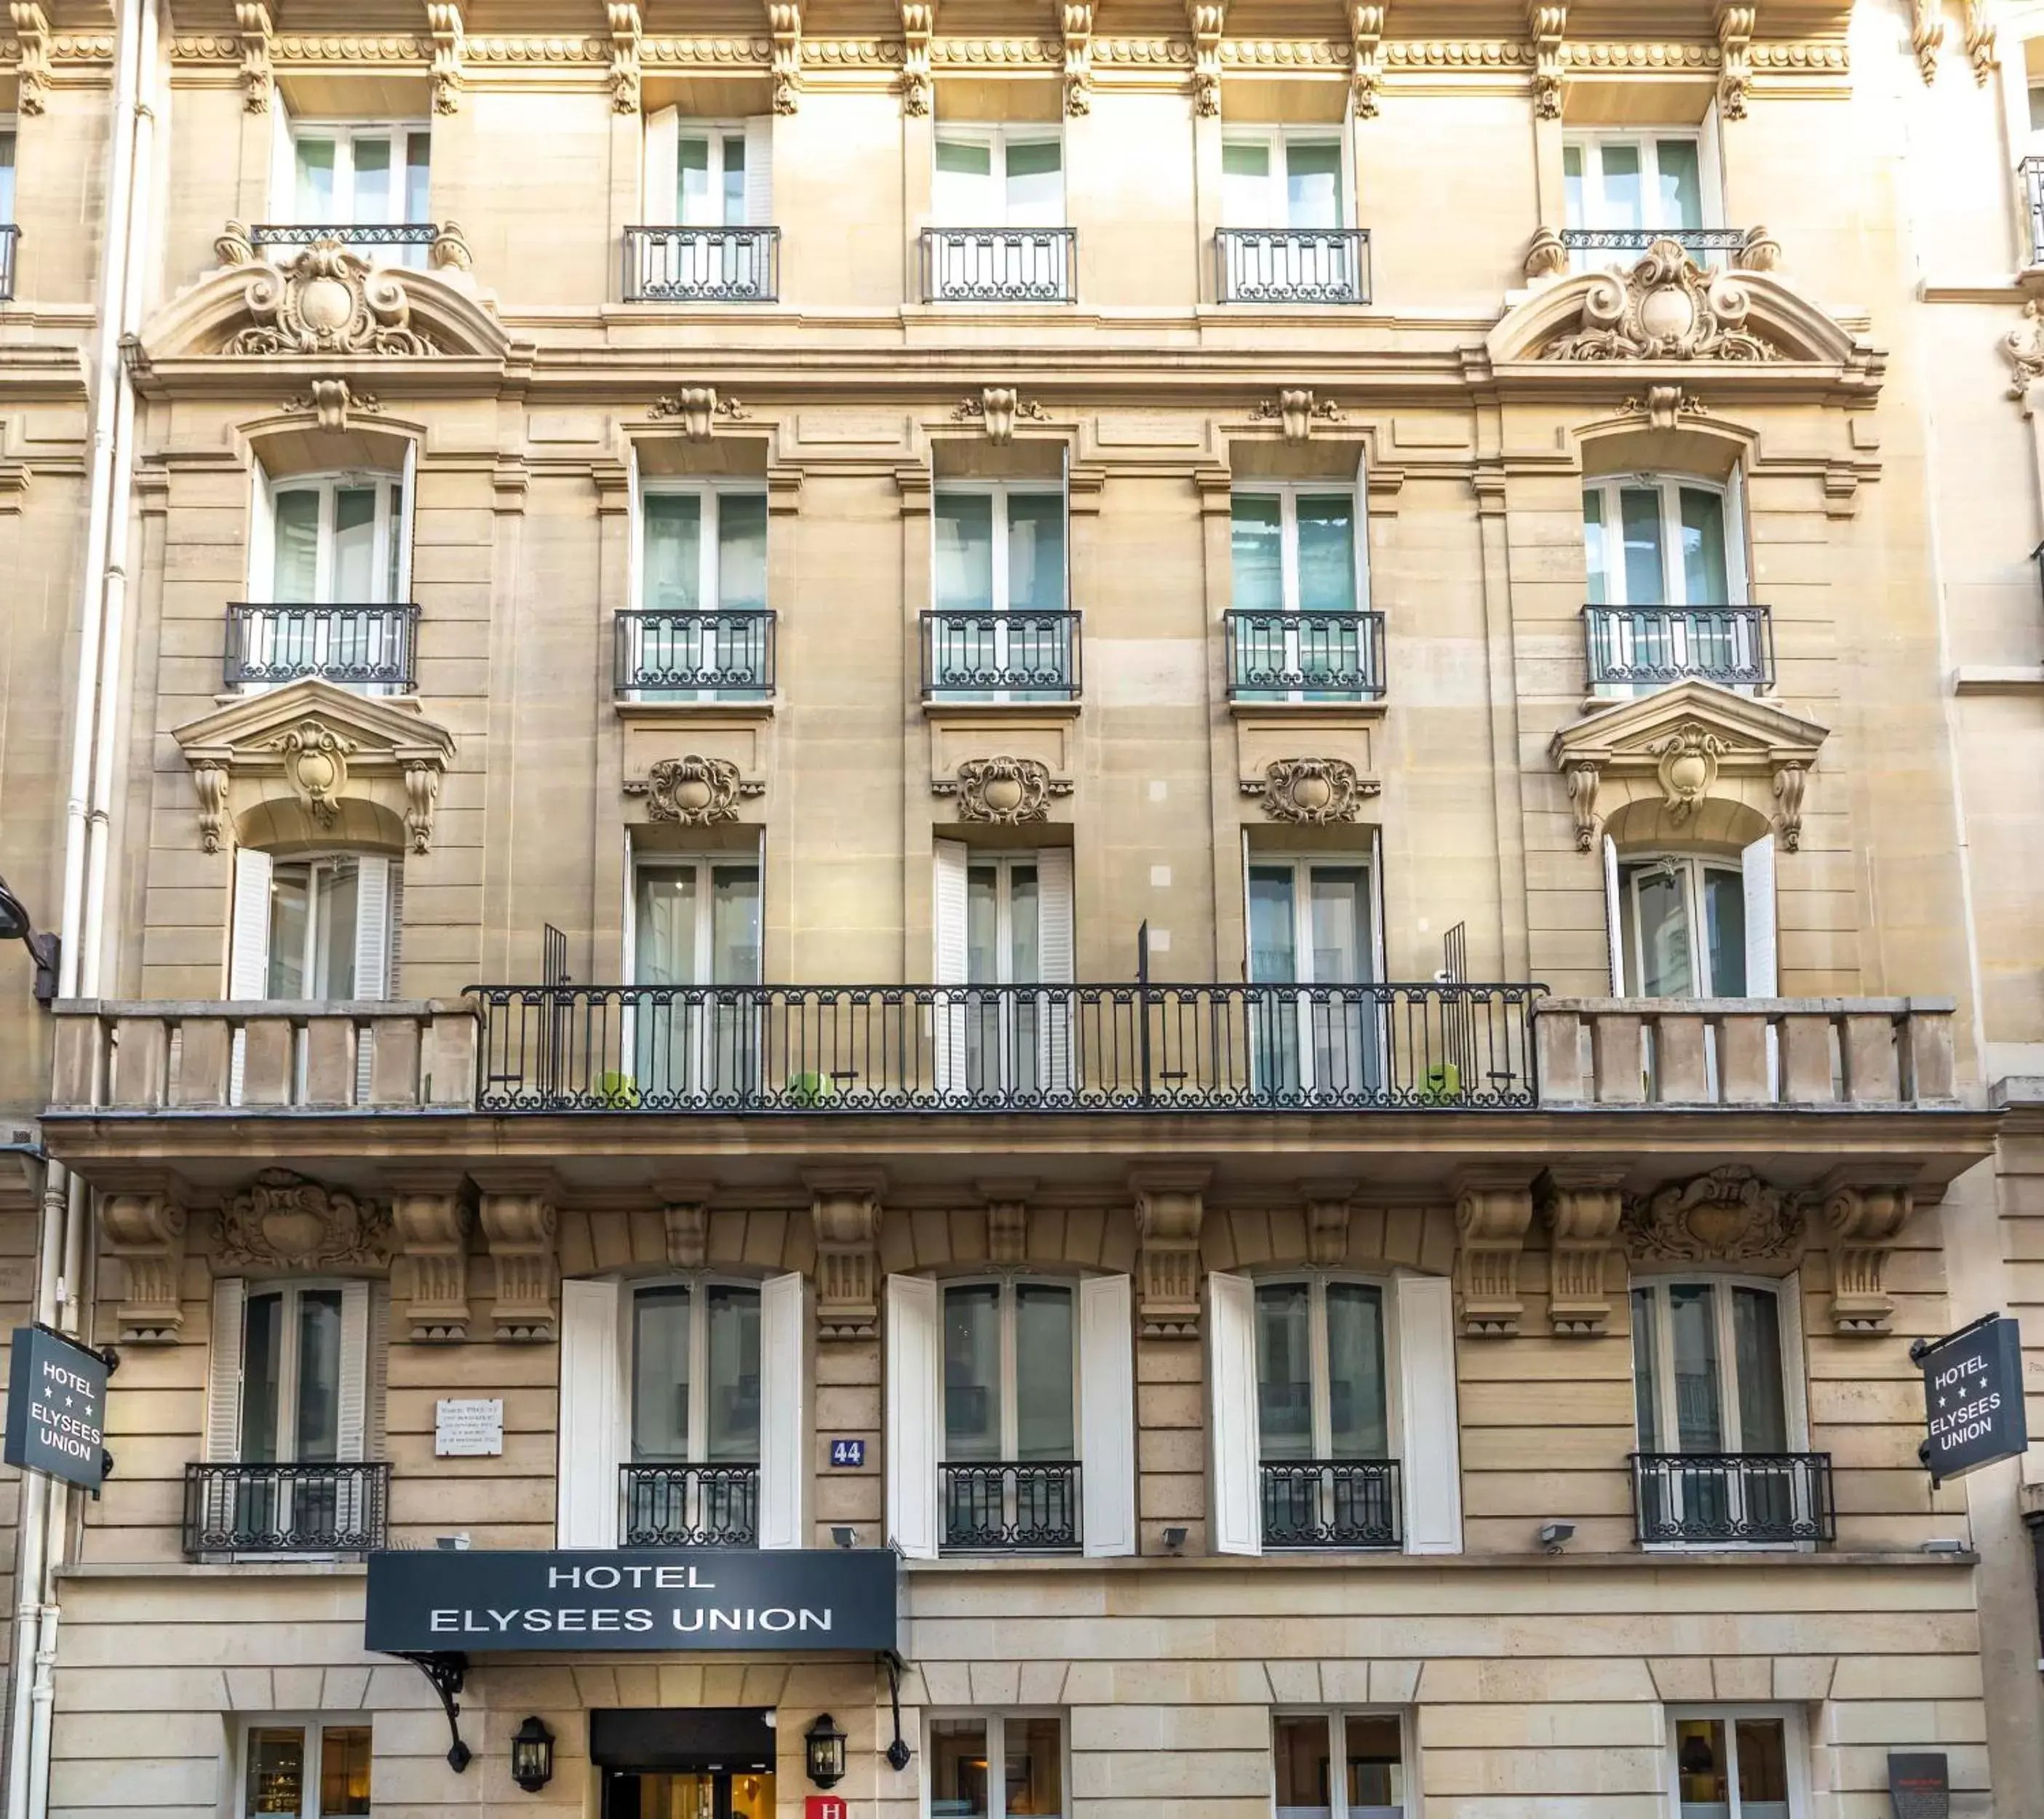 Property building in Elysées Union